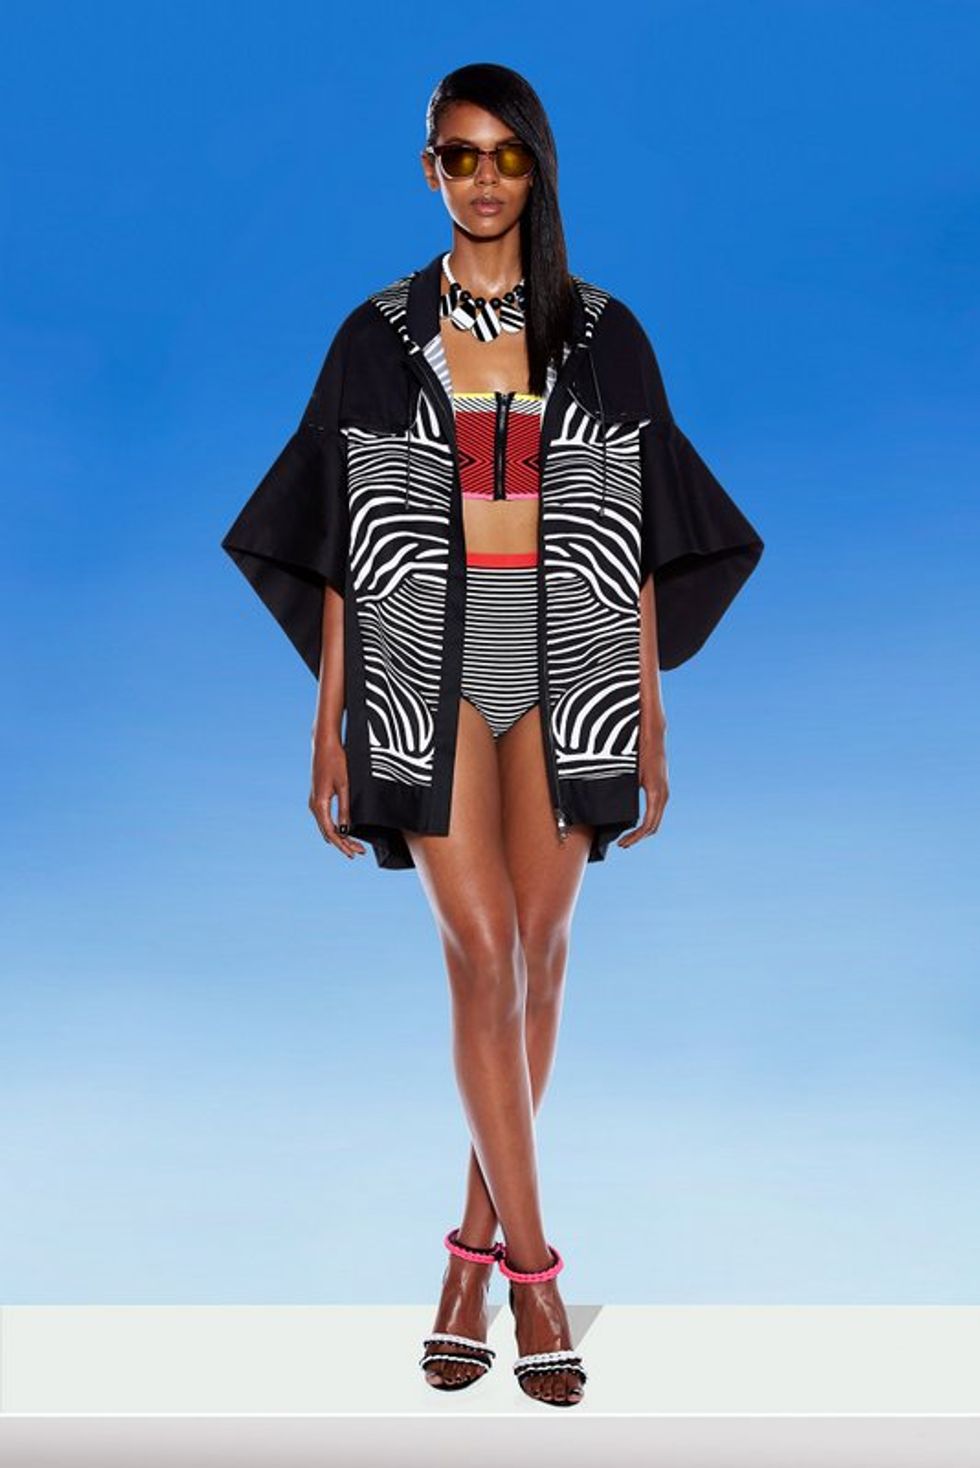 Eritrean-Canadian Model Grace Mahary x Ohne Titel